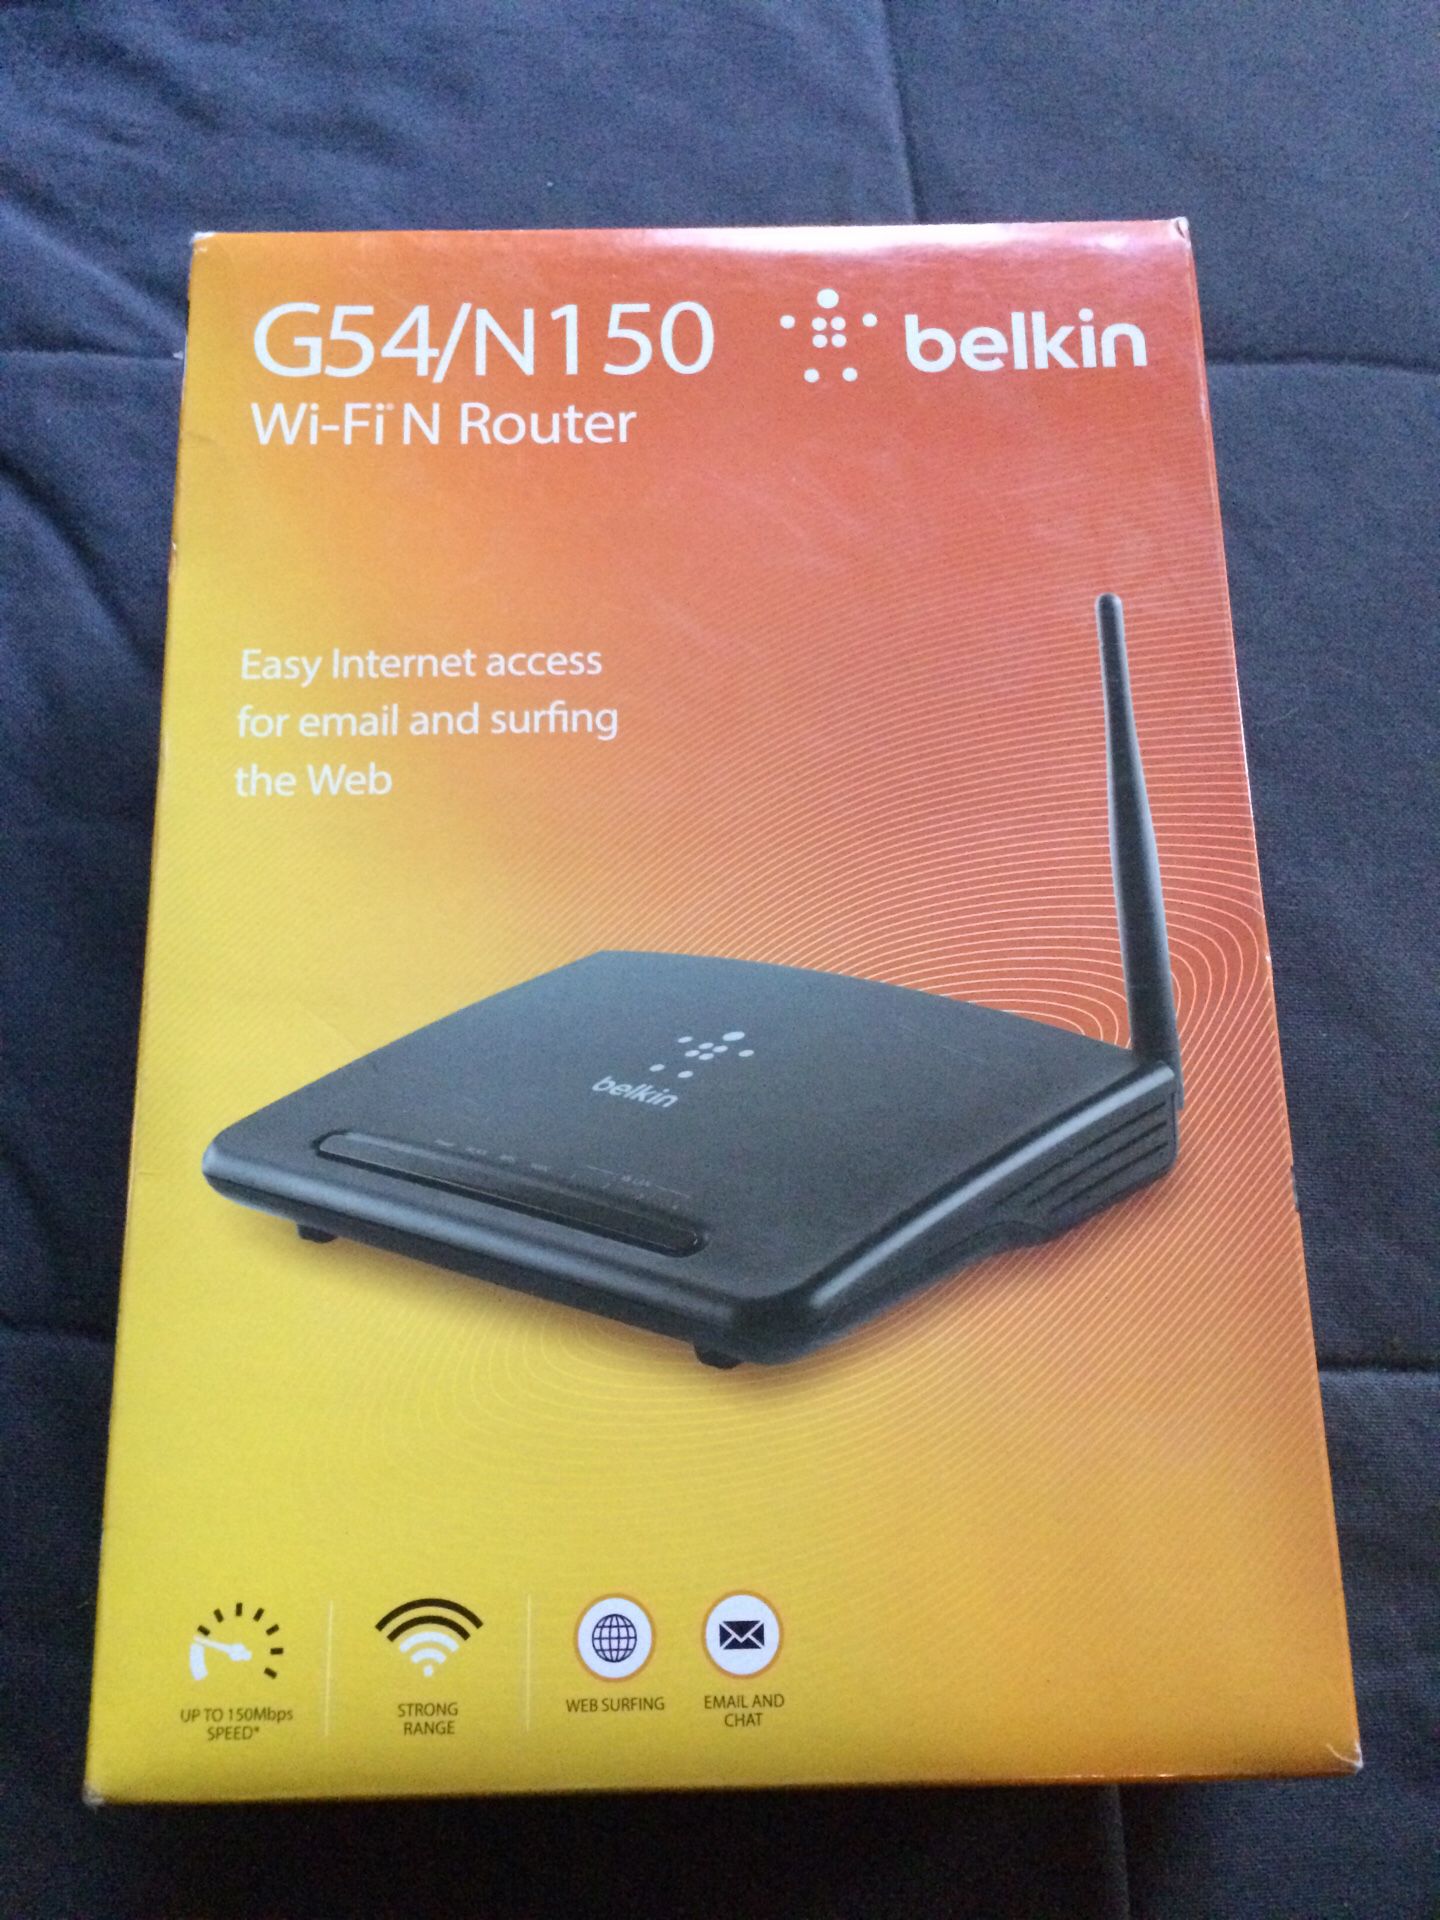 WiFi Router by Belkin